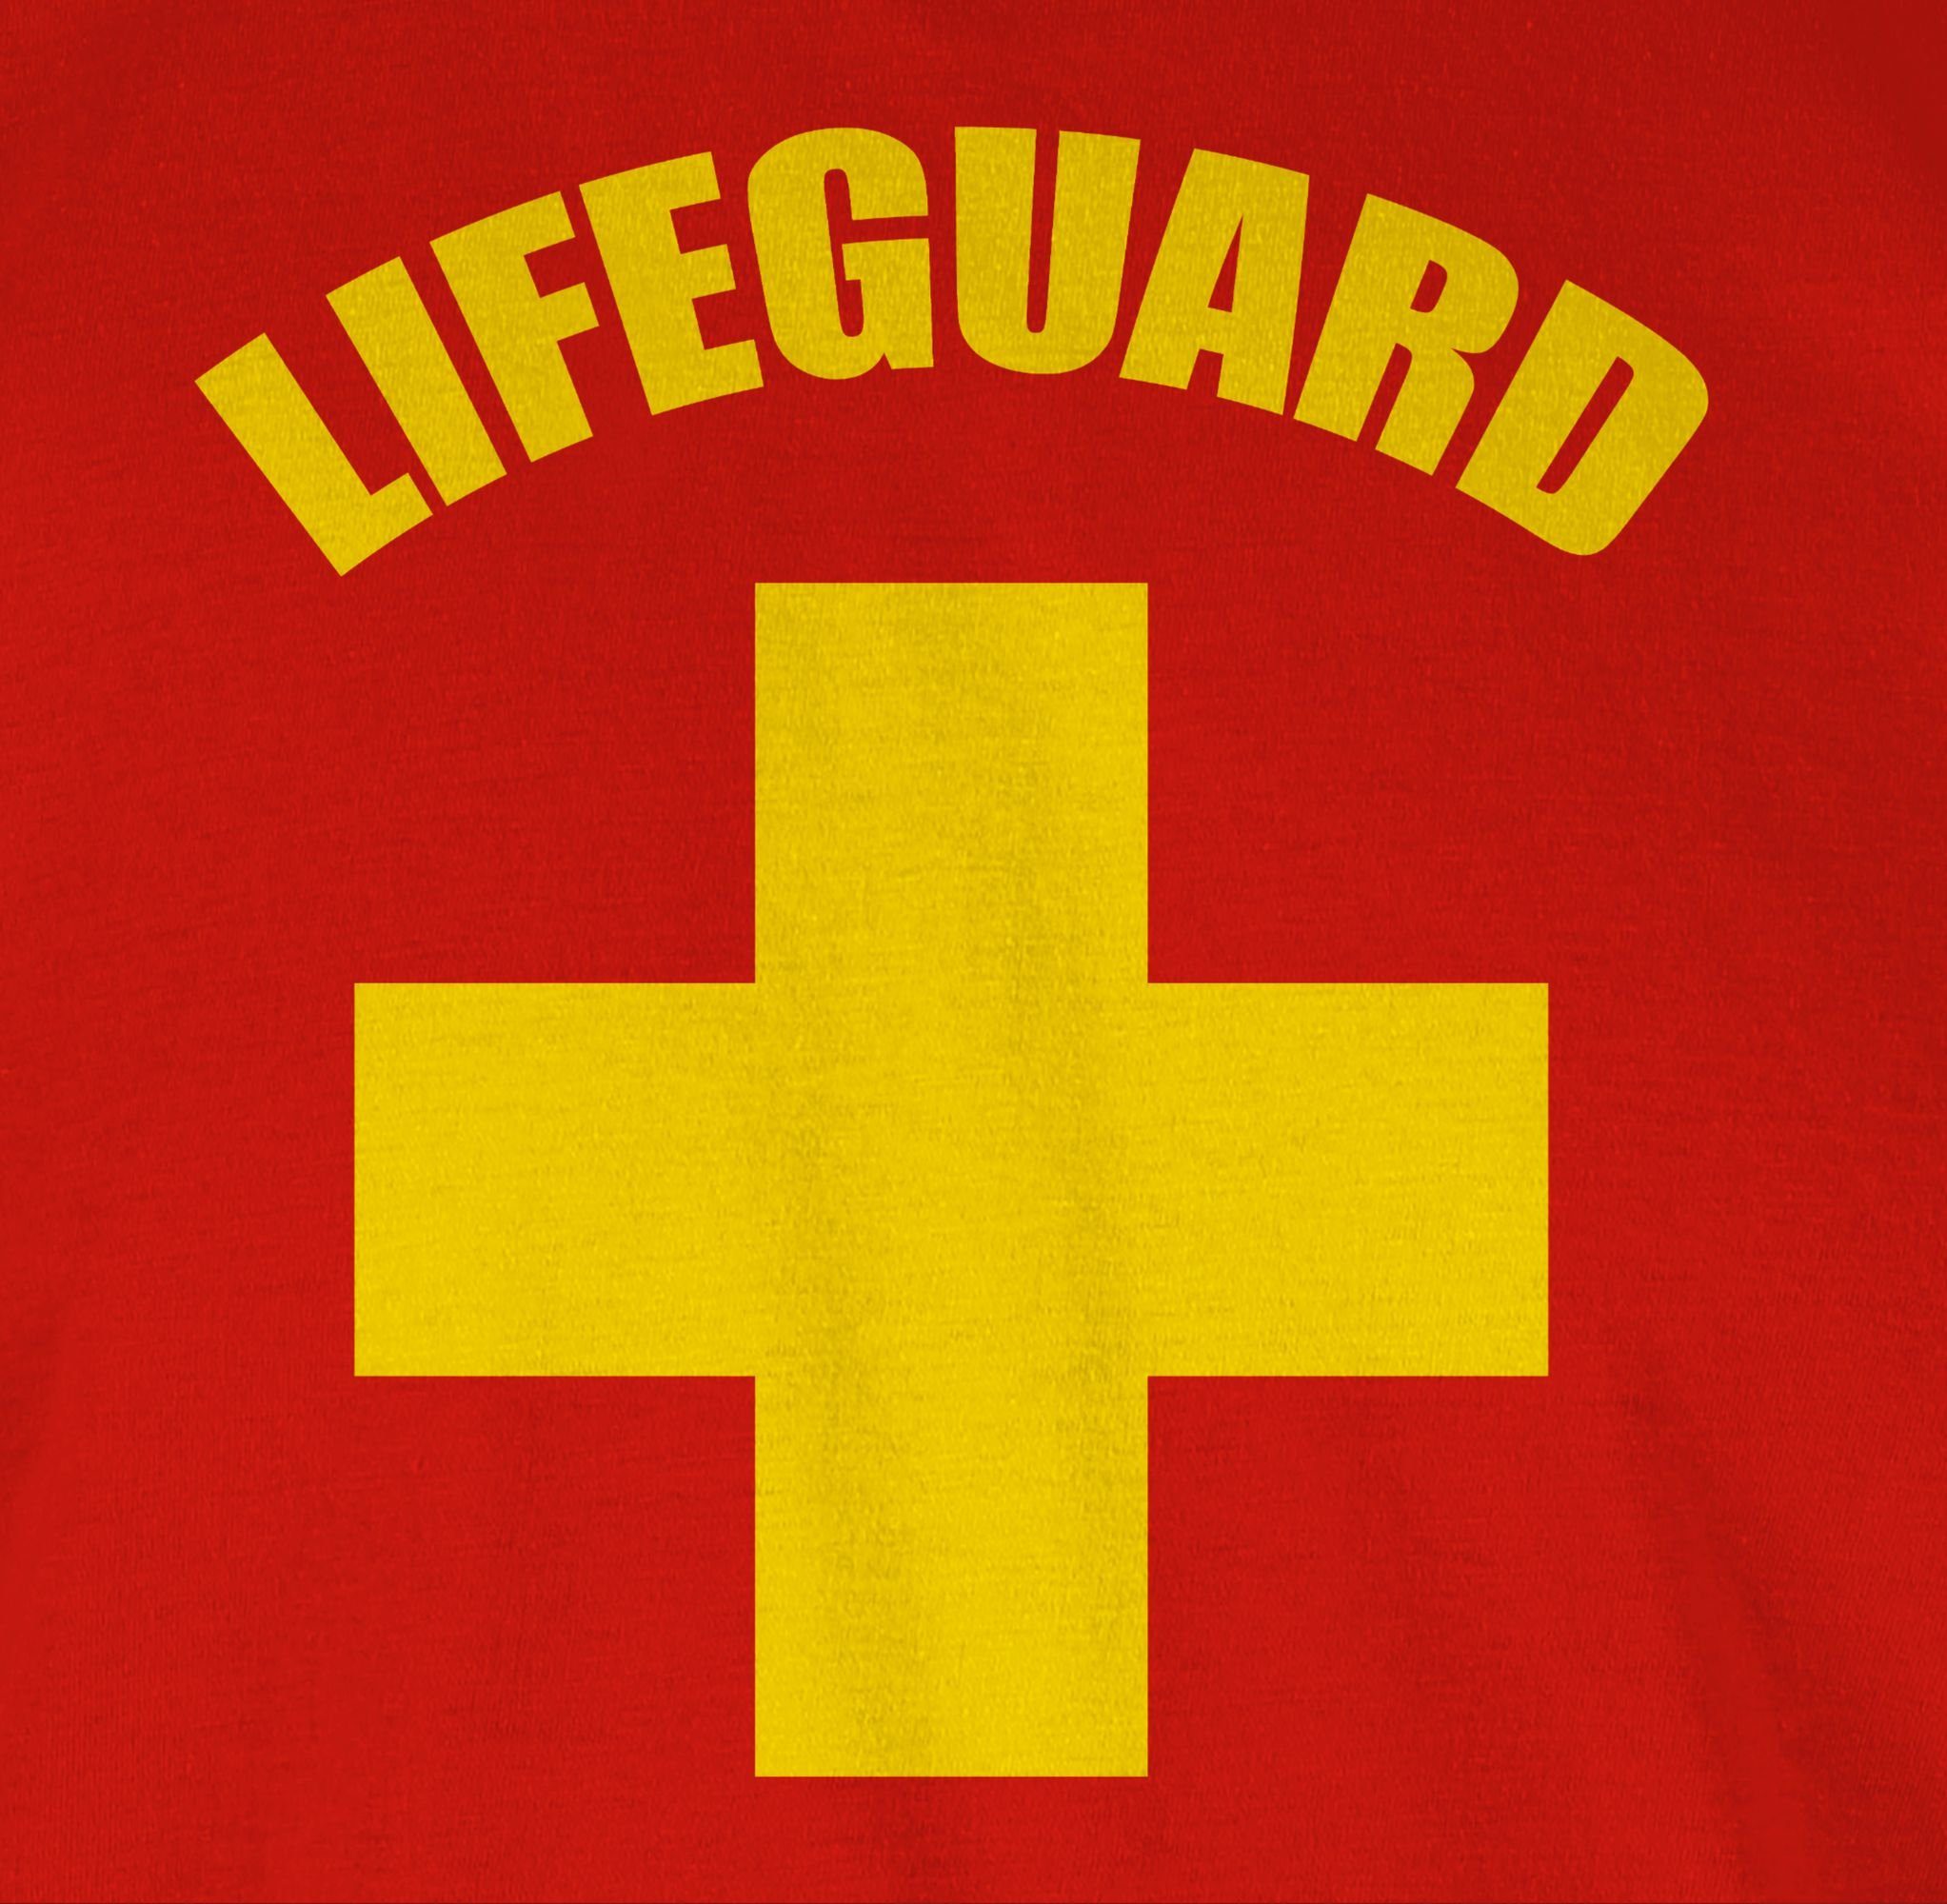 Shirtracer Rettungsschwimmer Outfit T-Shirt Rot Karneval Lifeguard Wasserrettung Baywatch 1